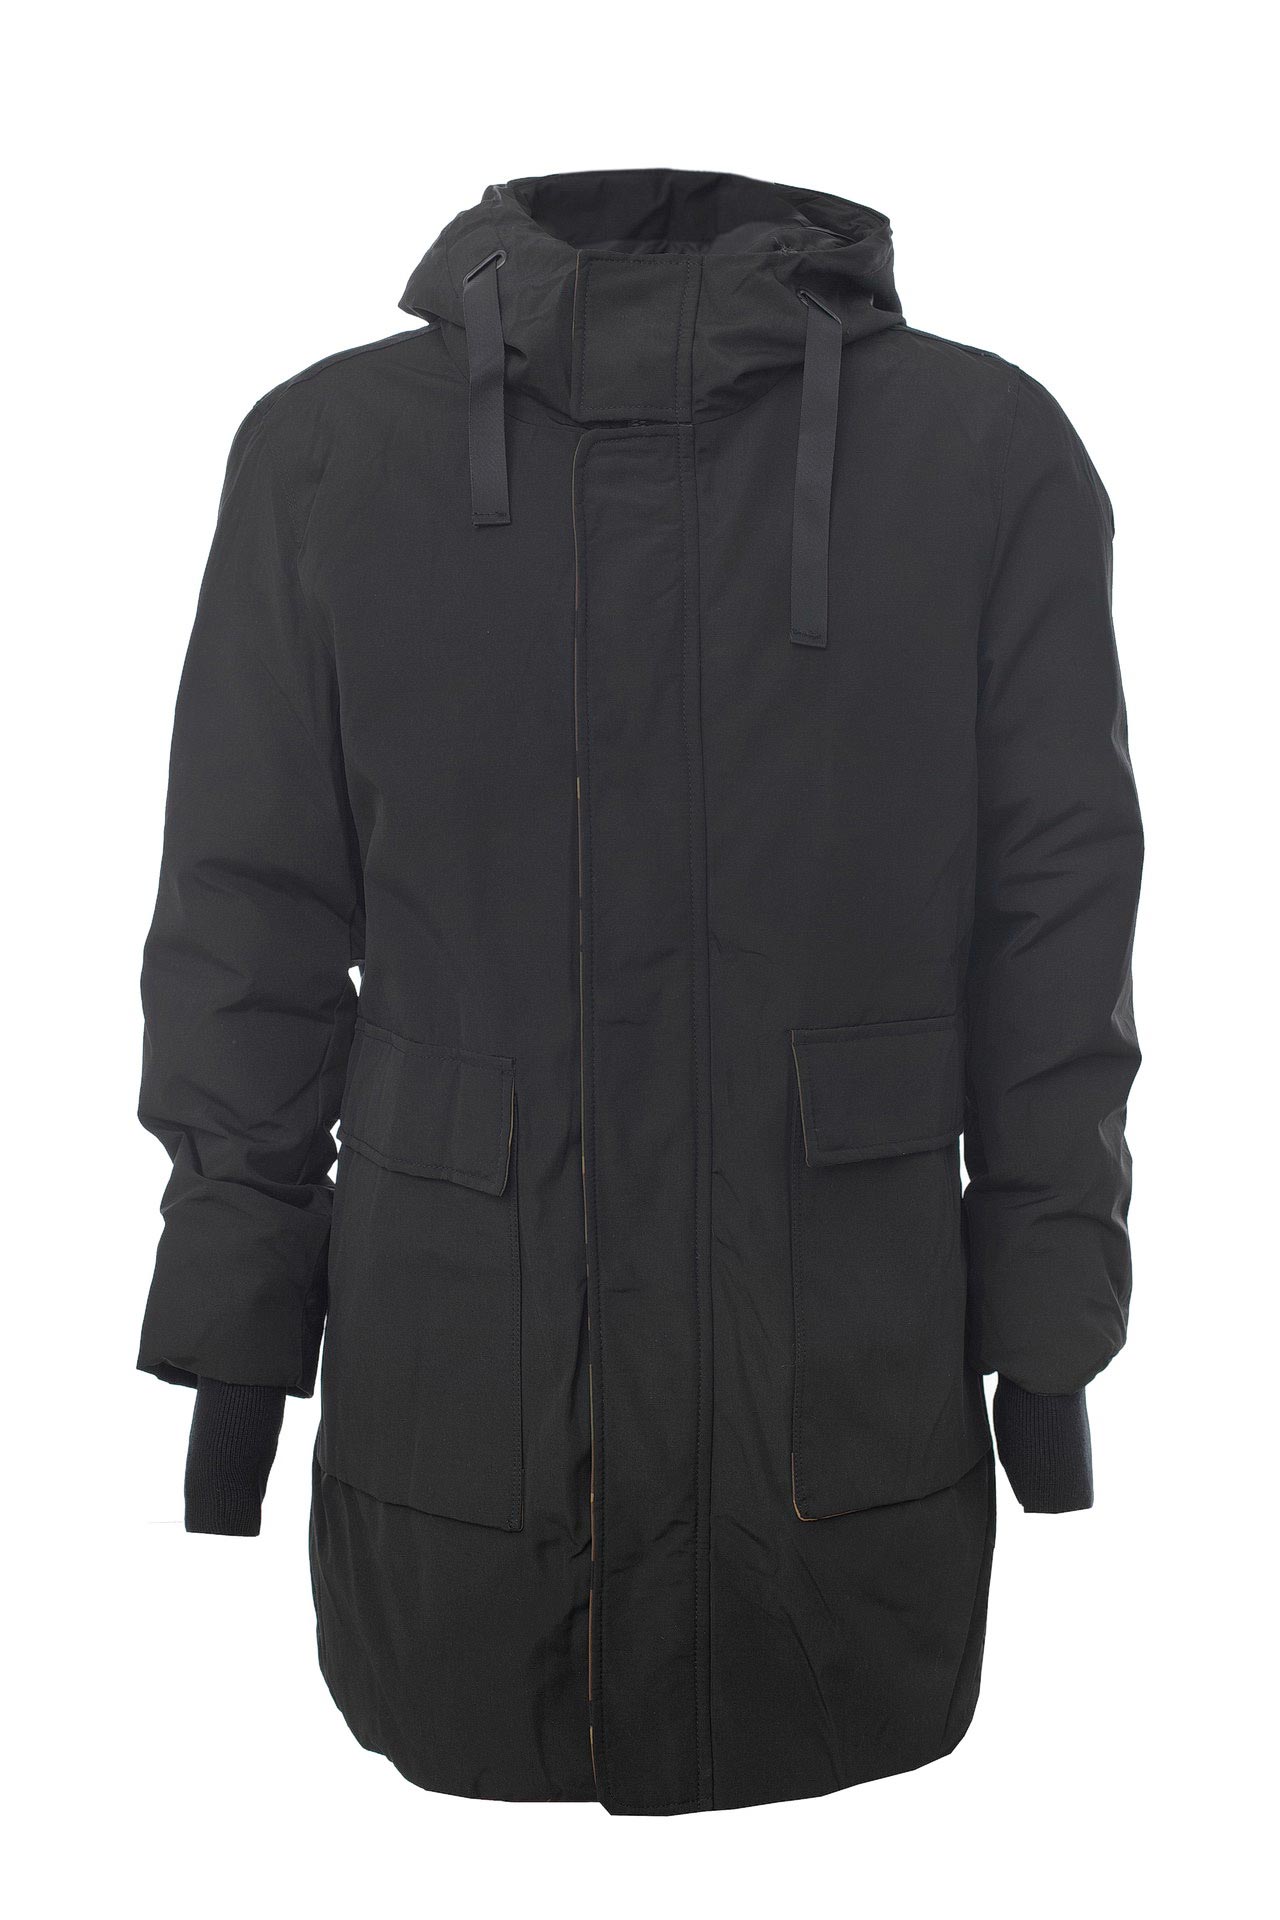 Одежда мужская Пальто GIANNI LUPO (GL111R/18.1). Купить за 13500 руб.